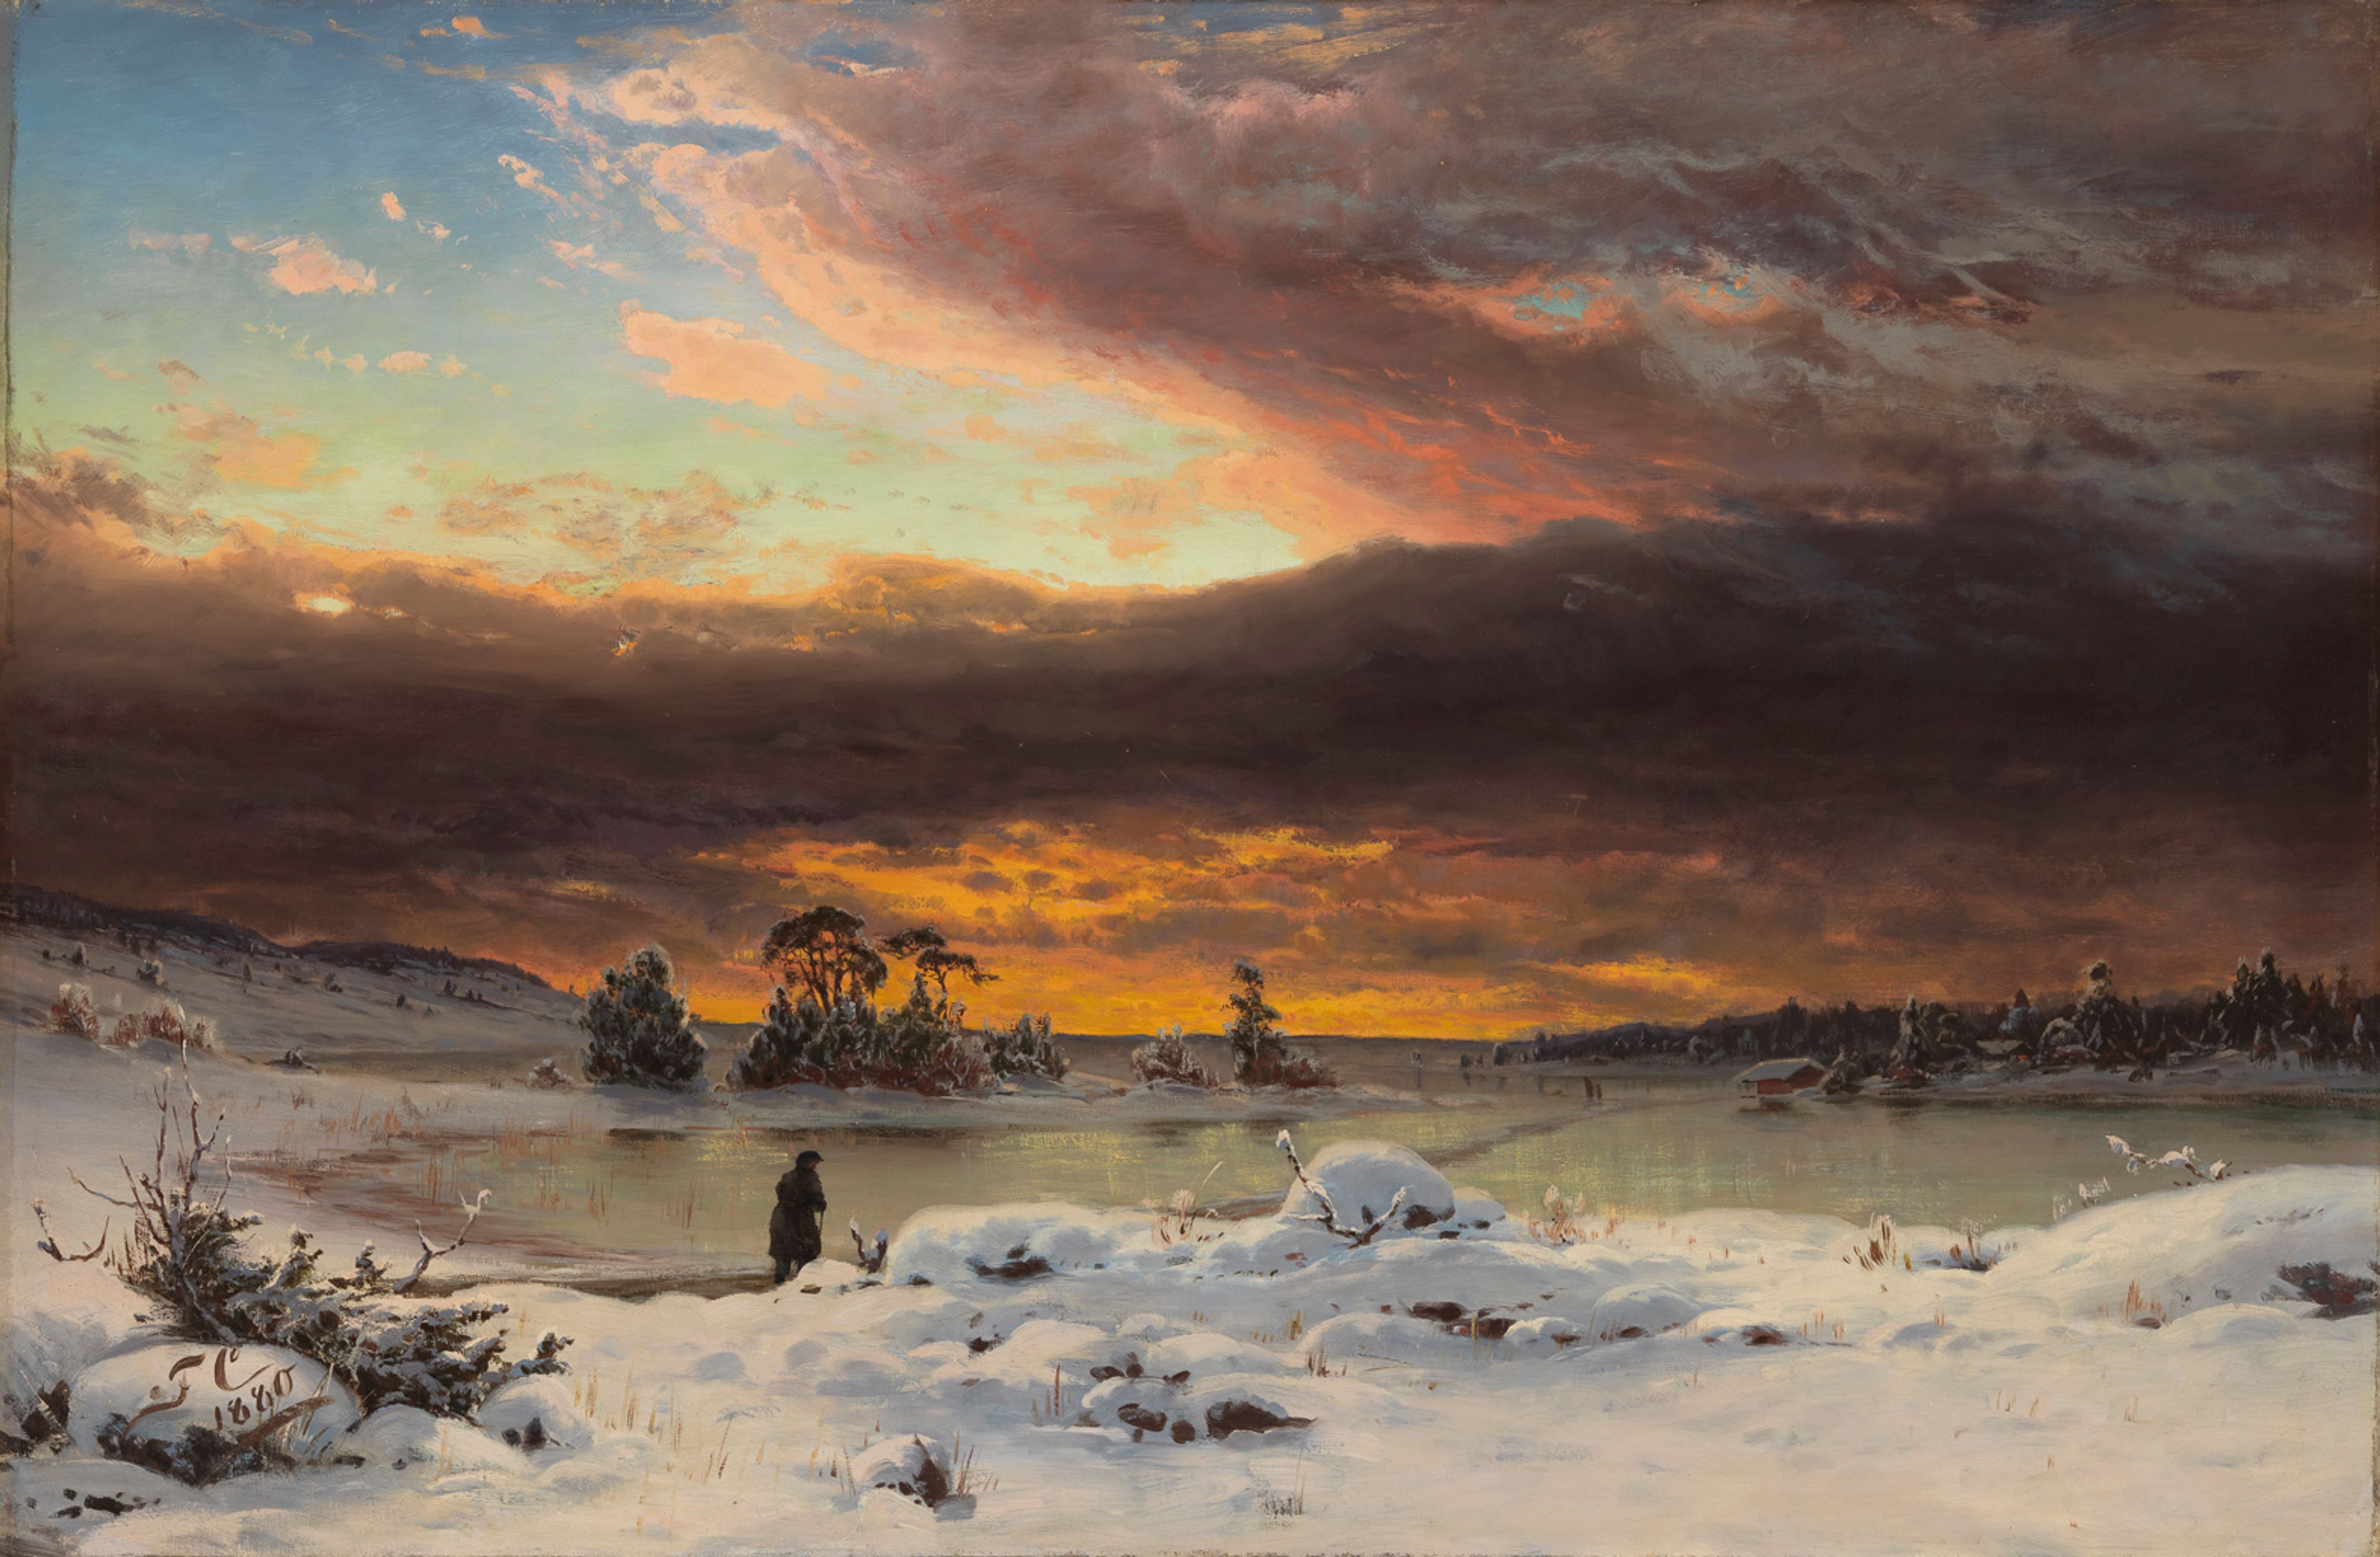 Χειμερινό τοπίο, Απογευματινή ατμόσφαιρα by Φάνι Τσέρμπεργκ - 1880 - 73.5 x 105 cm 